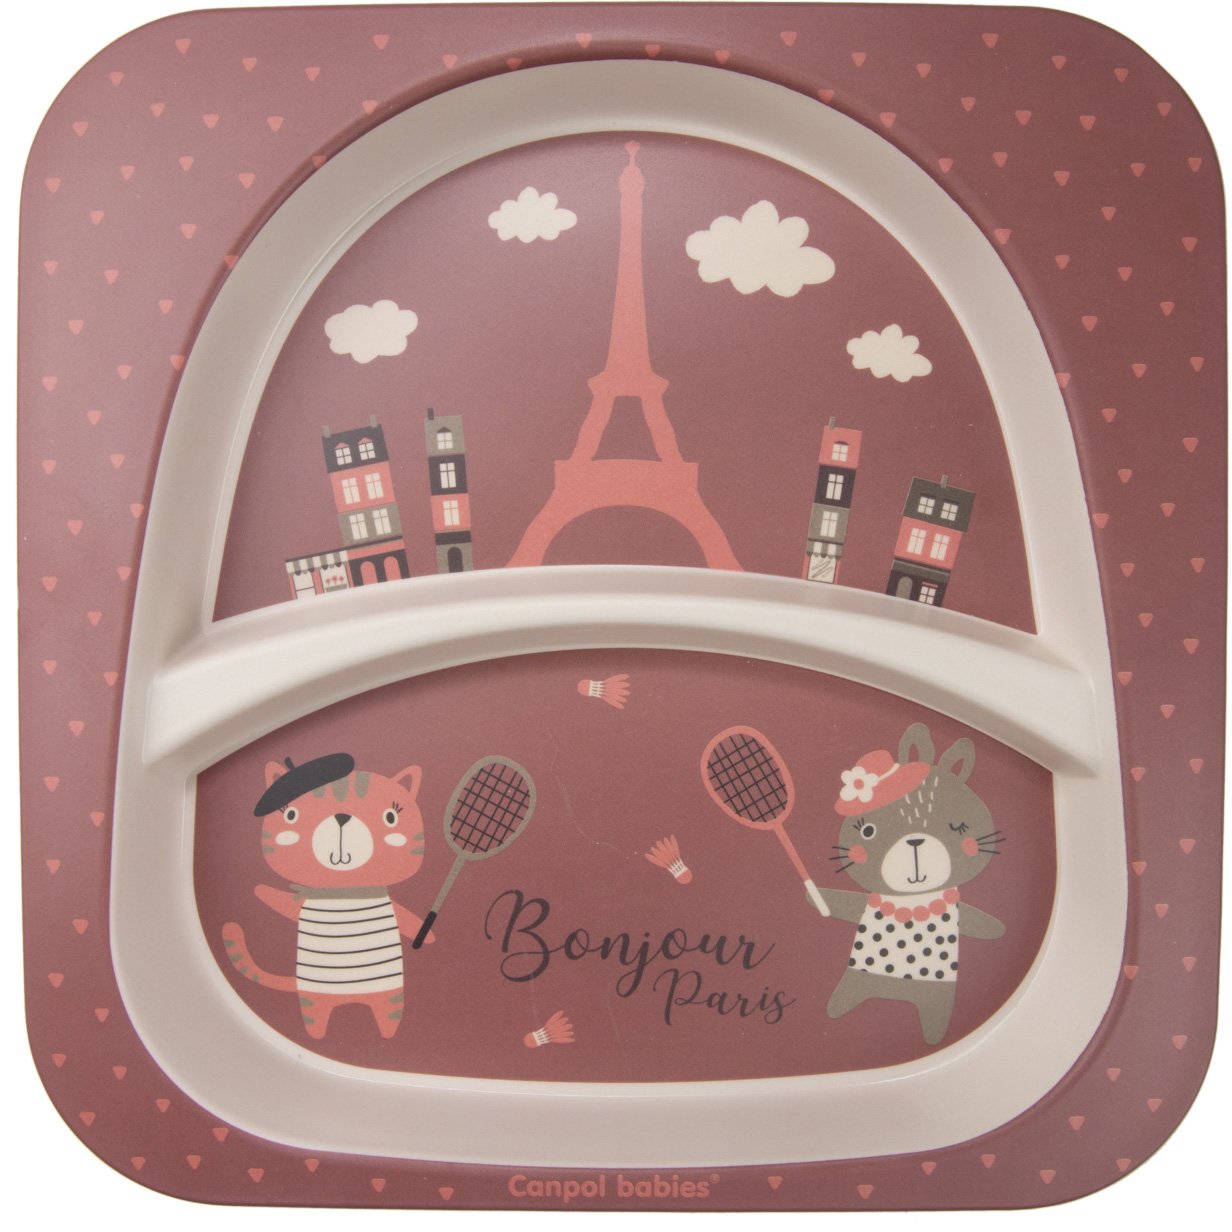 Набір посуду Canpol babies Bonjour Paris, 5 предметів, червоний (9/227_red) - фото 3